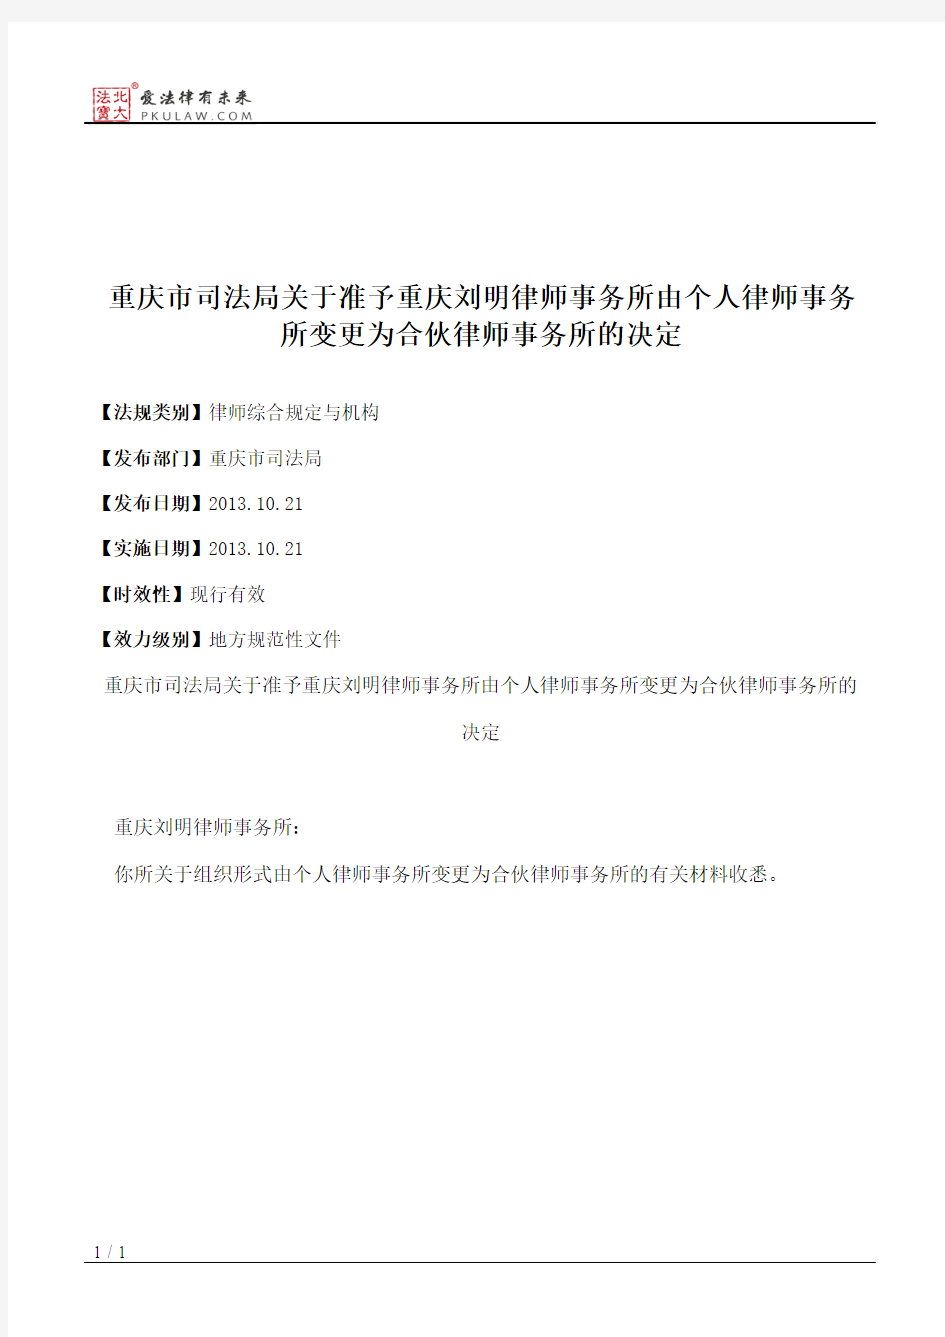 重庆市司法局关于准予重庆刘明律师事务所由个人律师事务所变更为